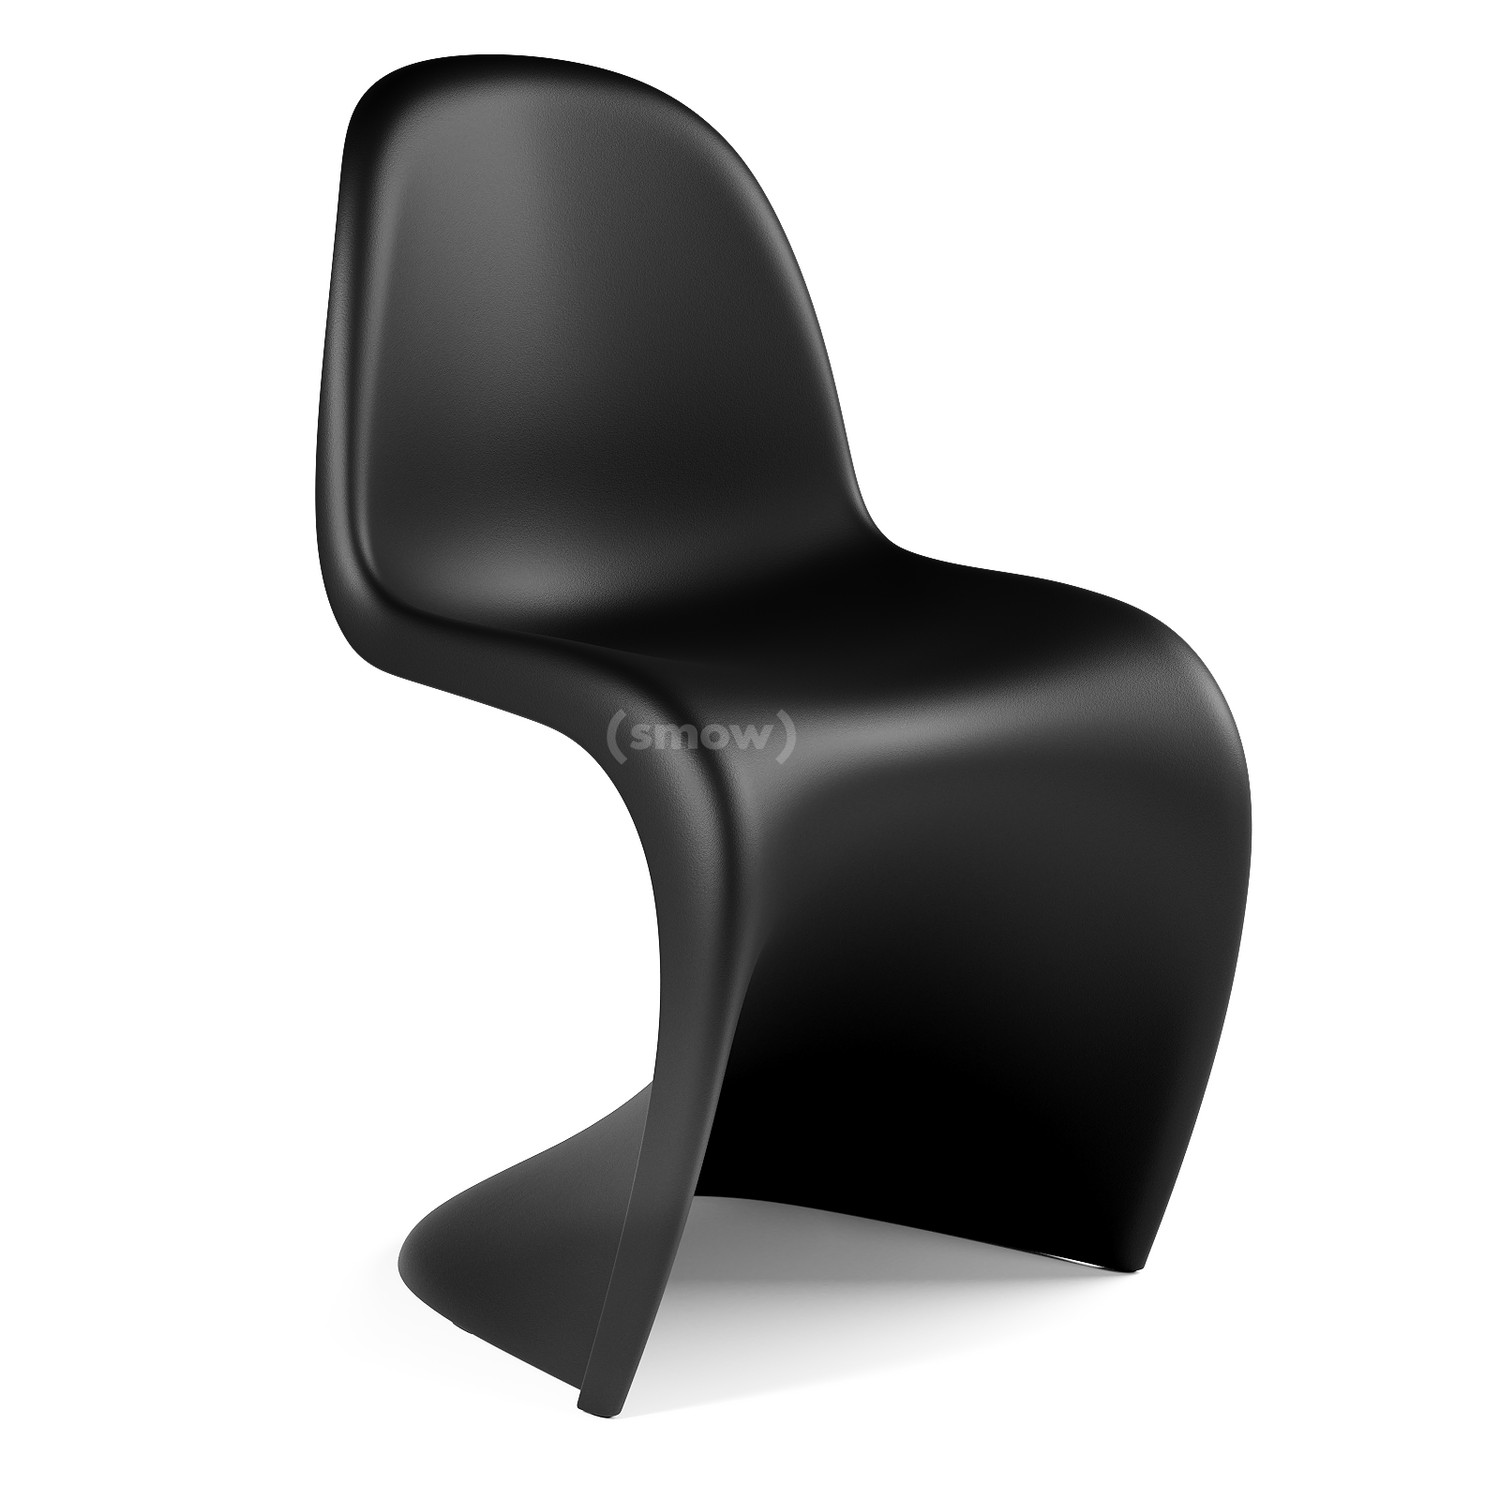 Vitra Panton Chair von Verner Panton, 20   Designermöbel von smow.de